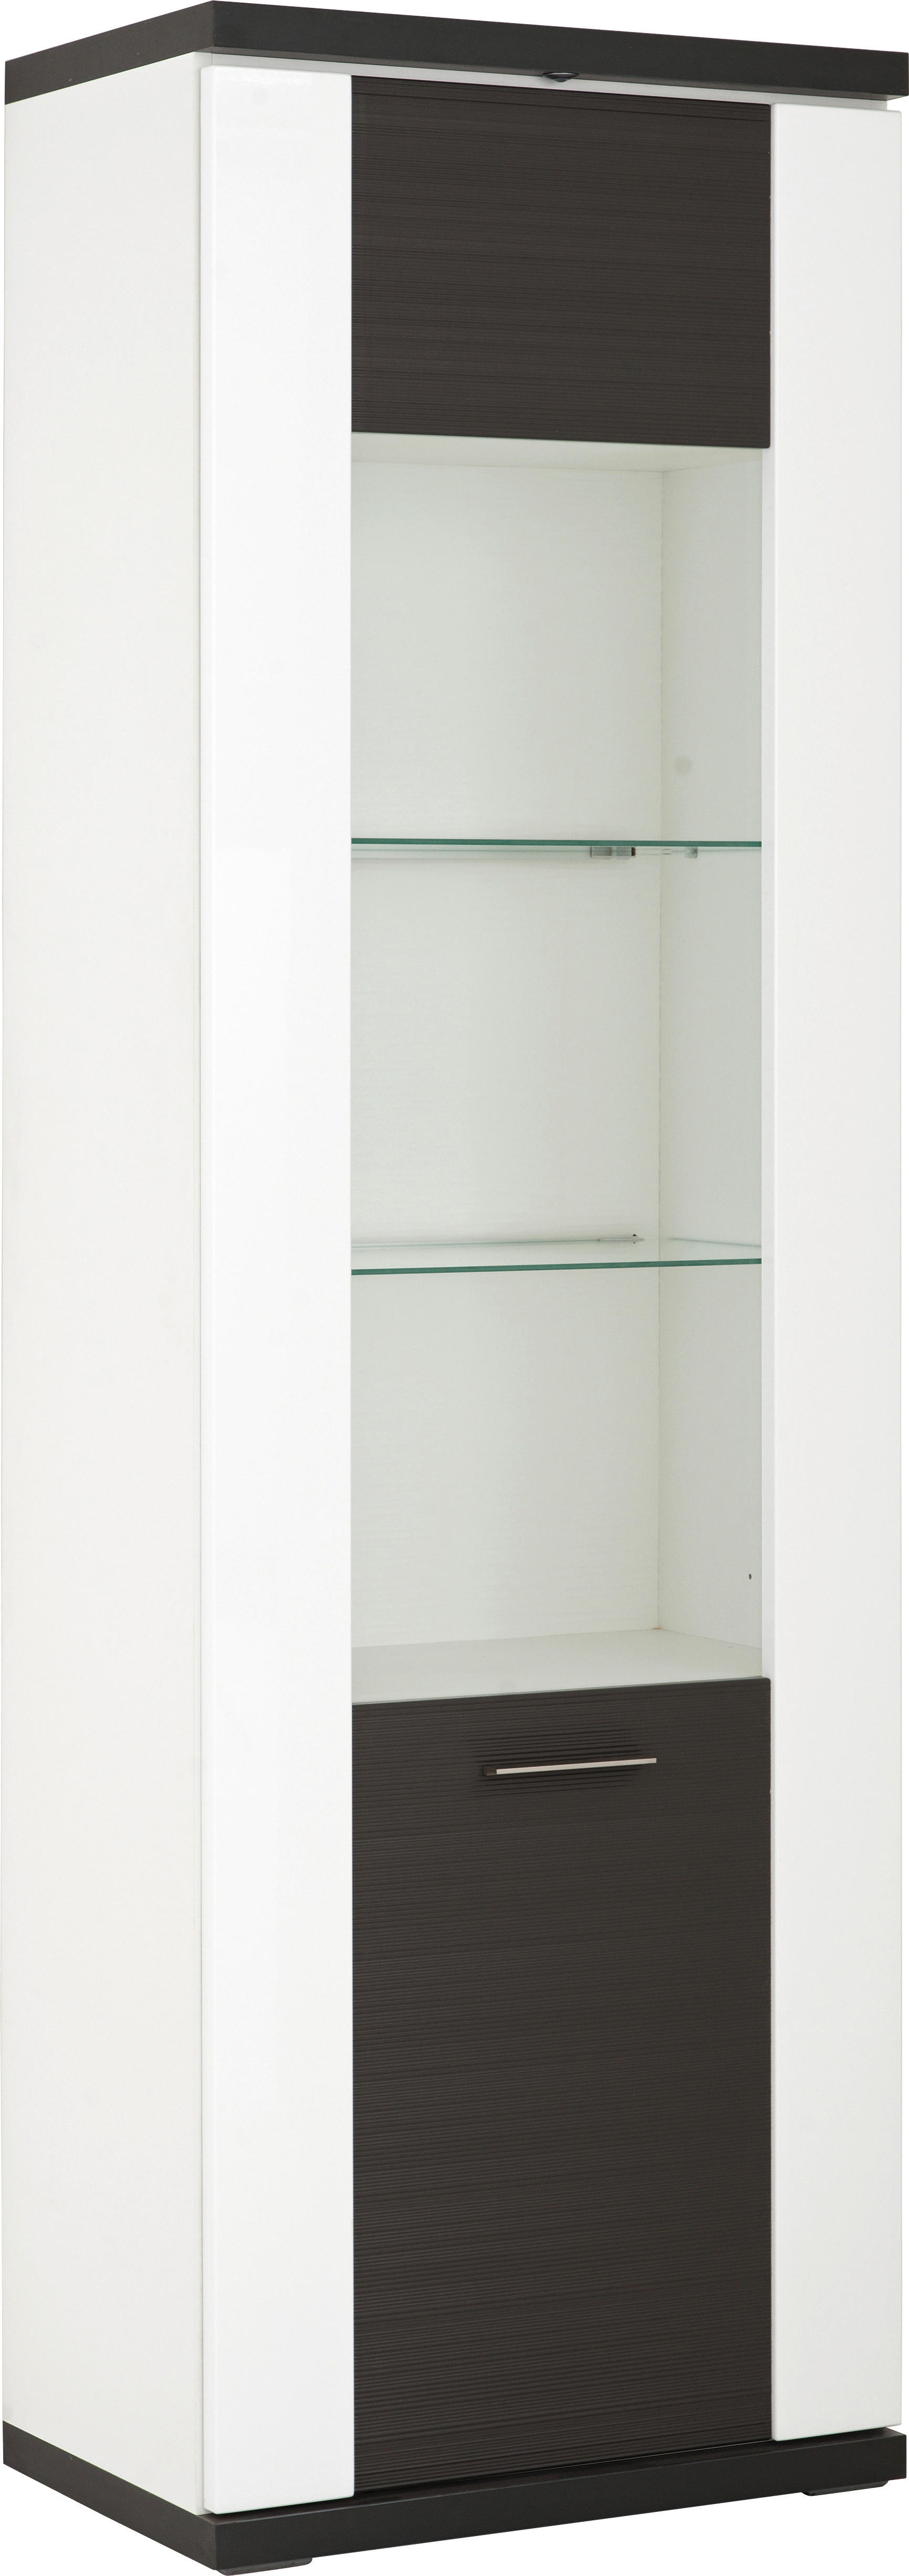 VITRINE Graphitfarben, Weiß Oberplattenbeleuchtung  - Silberfarben/Schwarz, Design, Glas/Kunststoff (65,1/206/41,6cm) - Xora